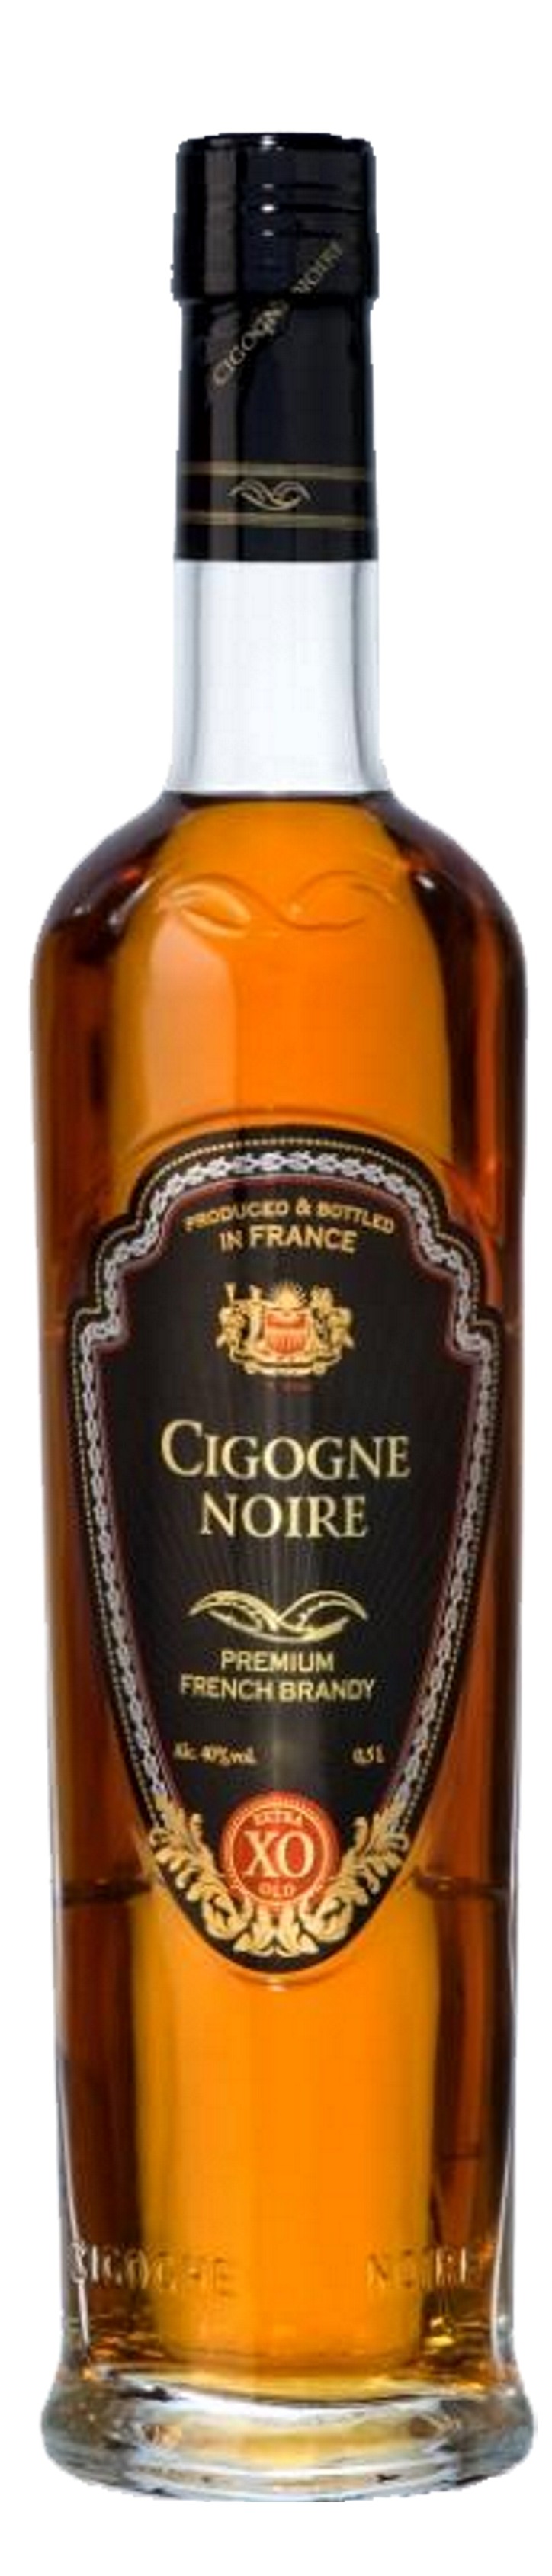 Cigogne Noire XO Brandy 0,5L 40%